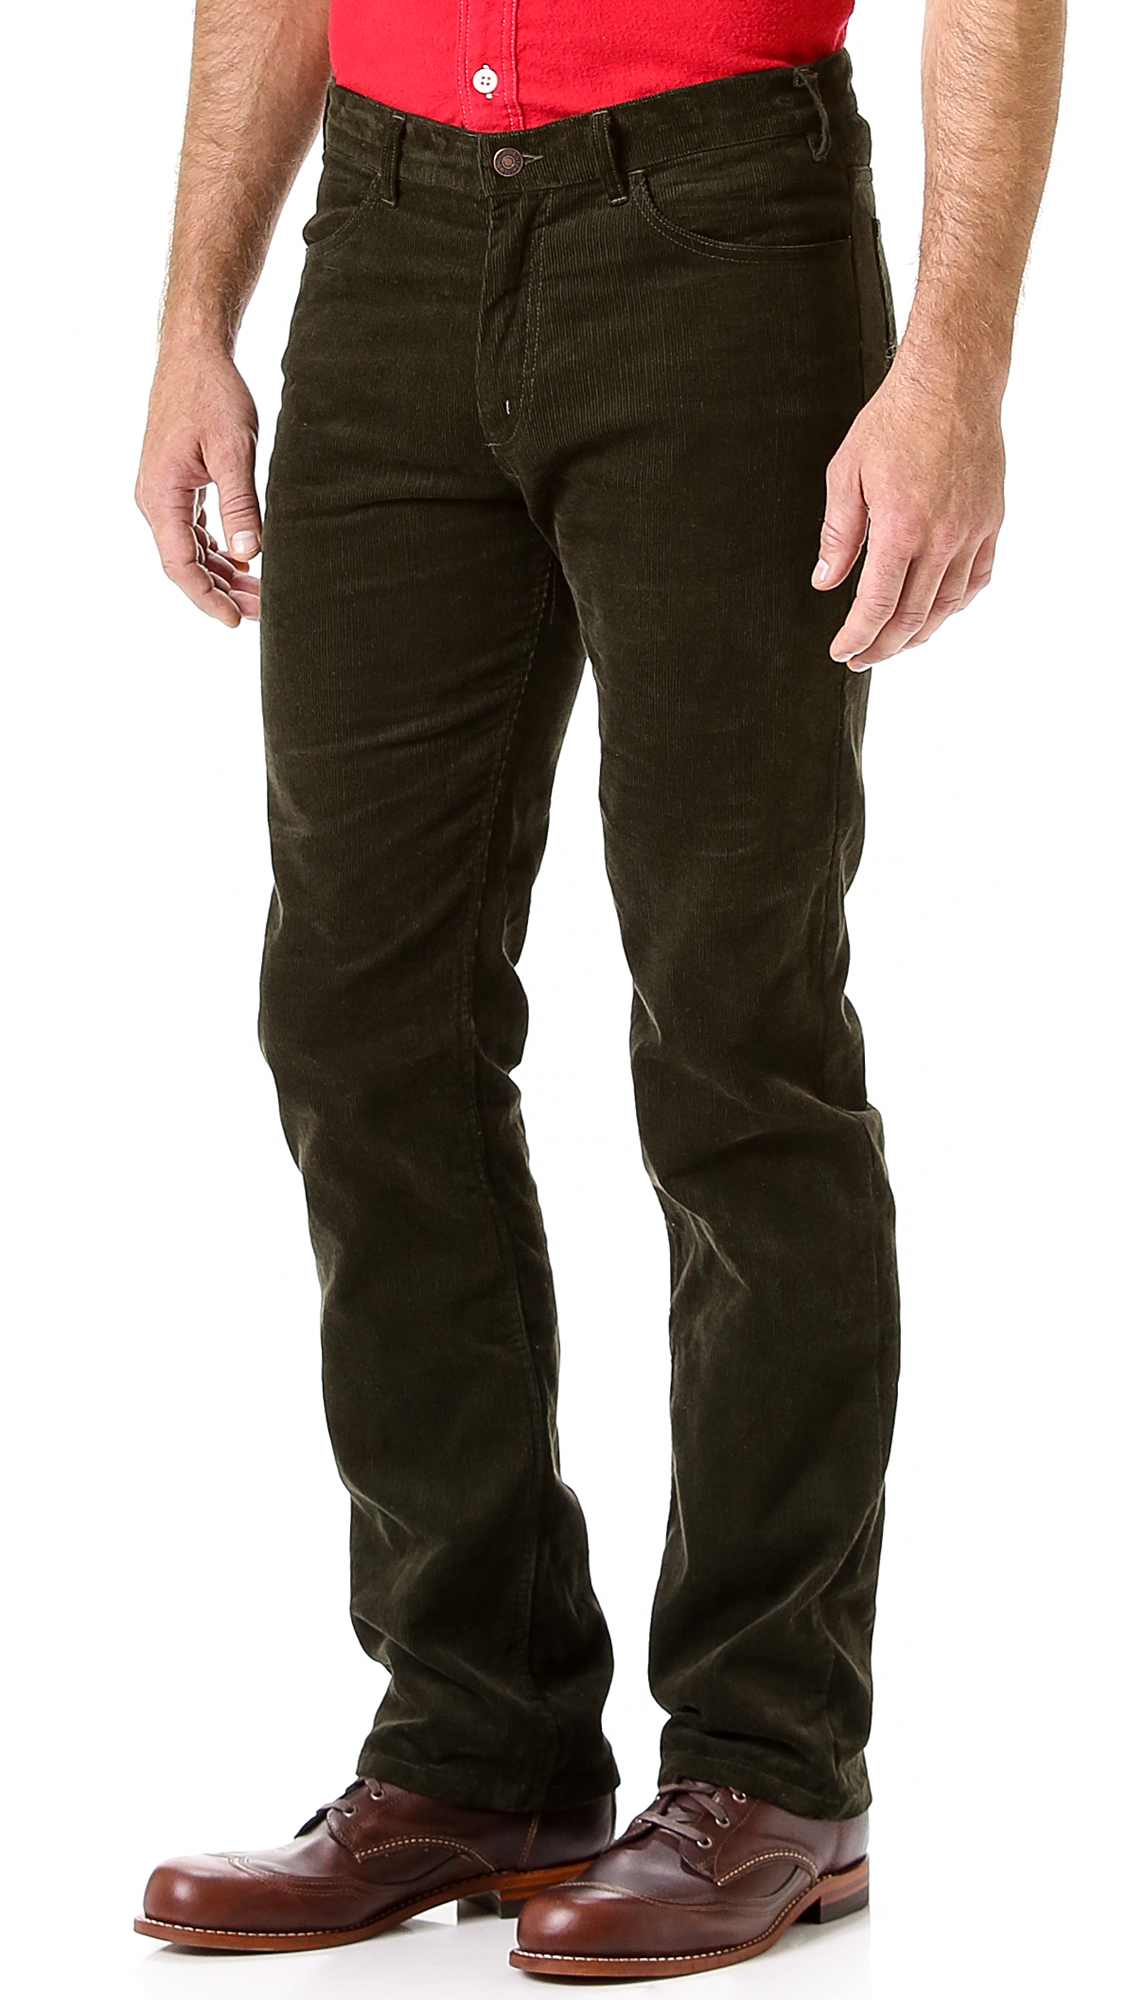 Lyst - Battenwear Classic Corduroy Pants in Green for Men